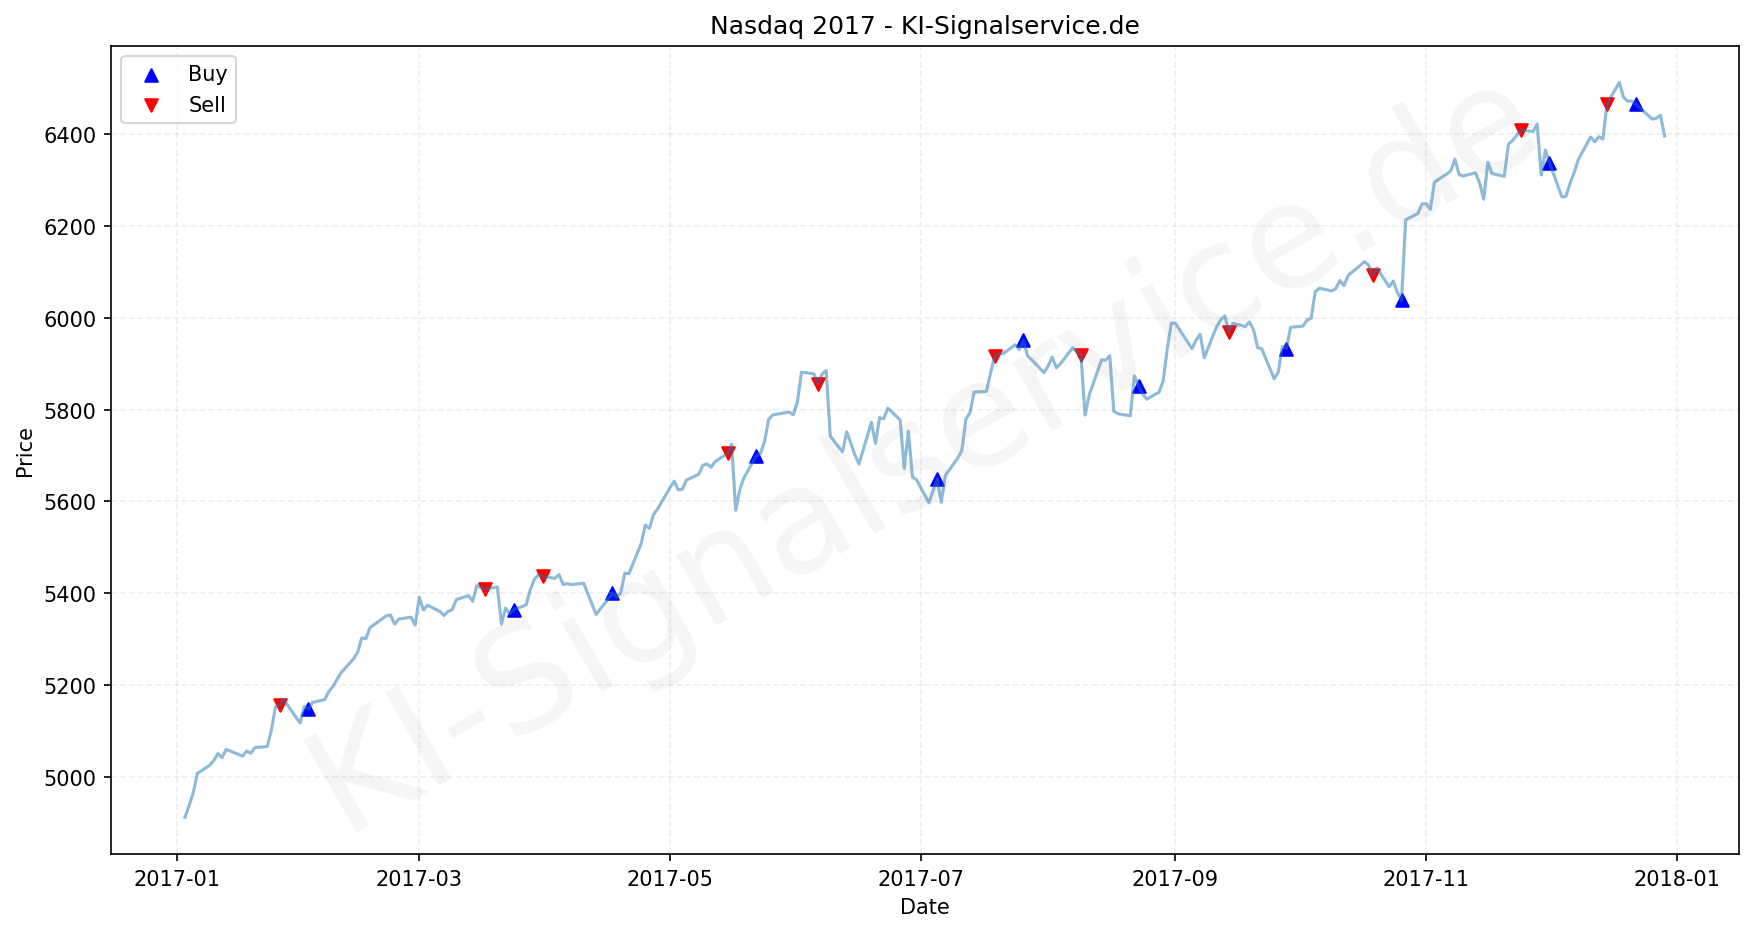 NADAQ Index Performance Chart - KI Tradingsignale 2017